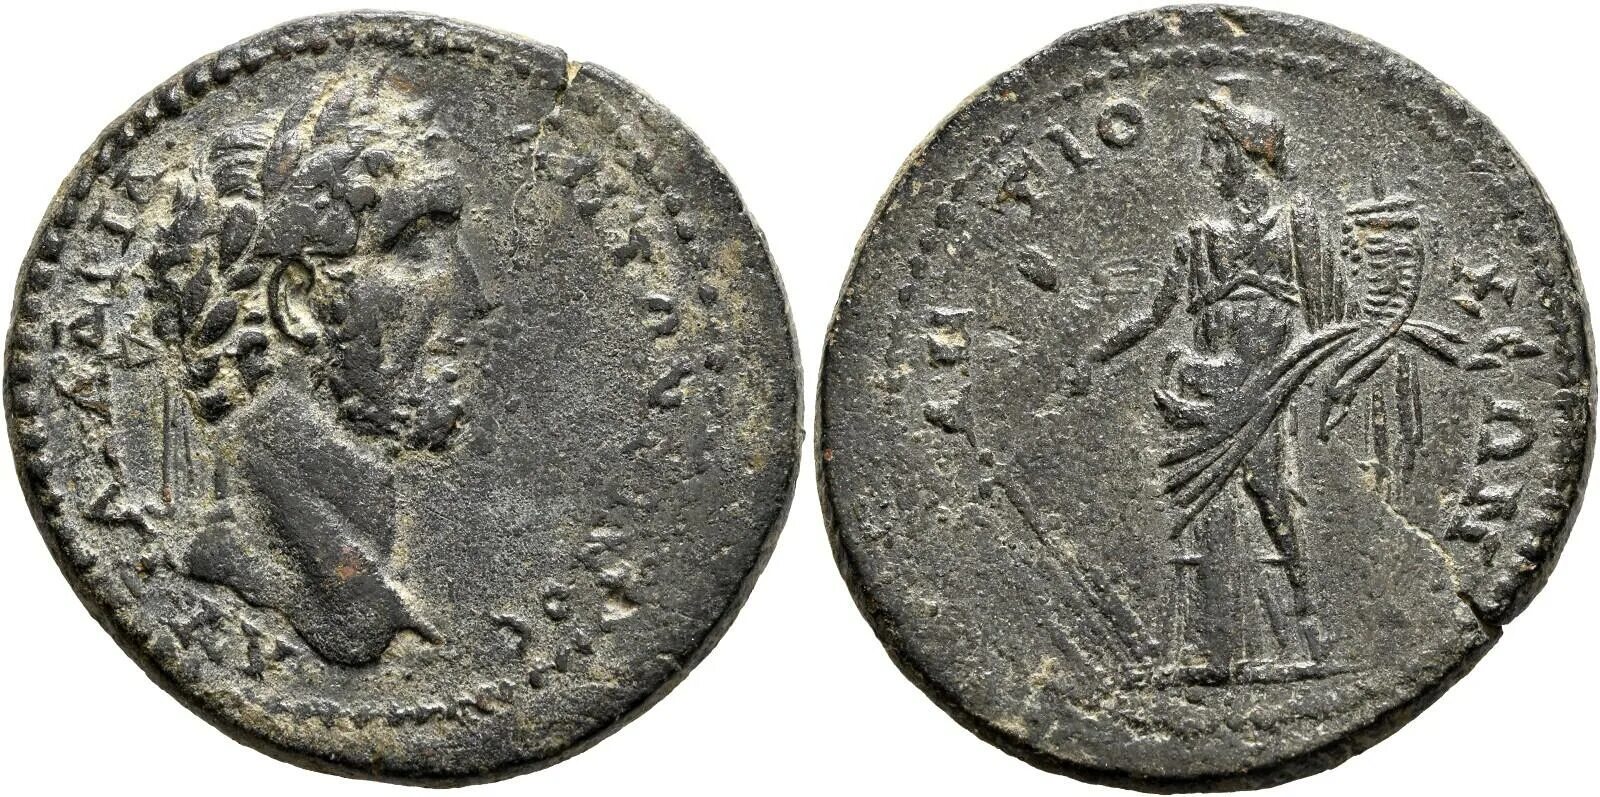 Lot 18. Республиканские бронзовые монеты Рима. Римская монета Parthicus Maximus. Монеты Антиохия Антоний Пий Тихе.